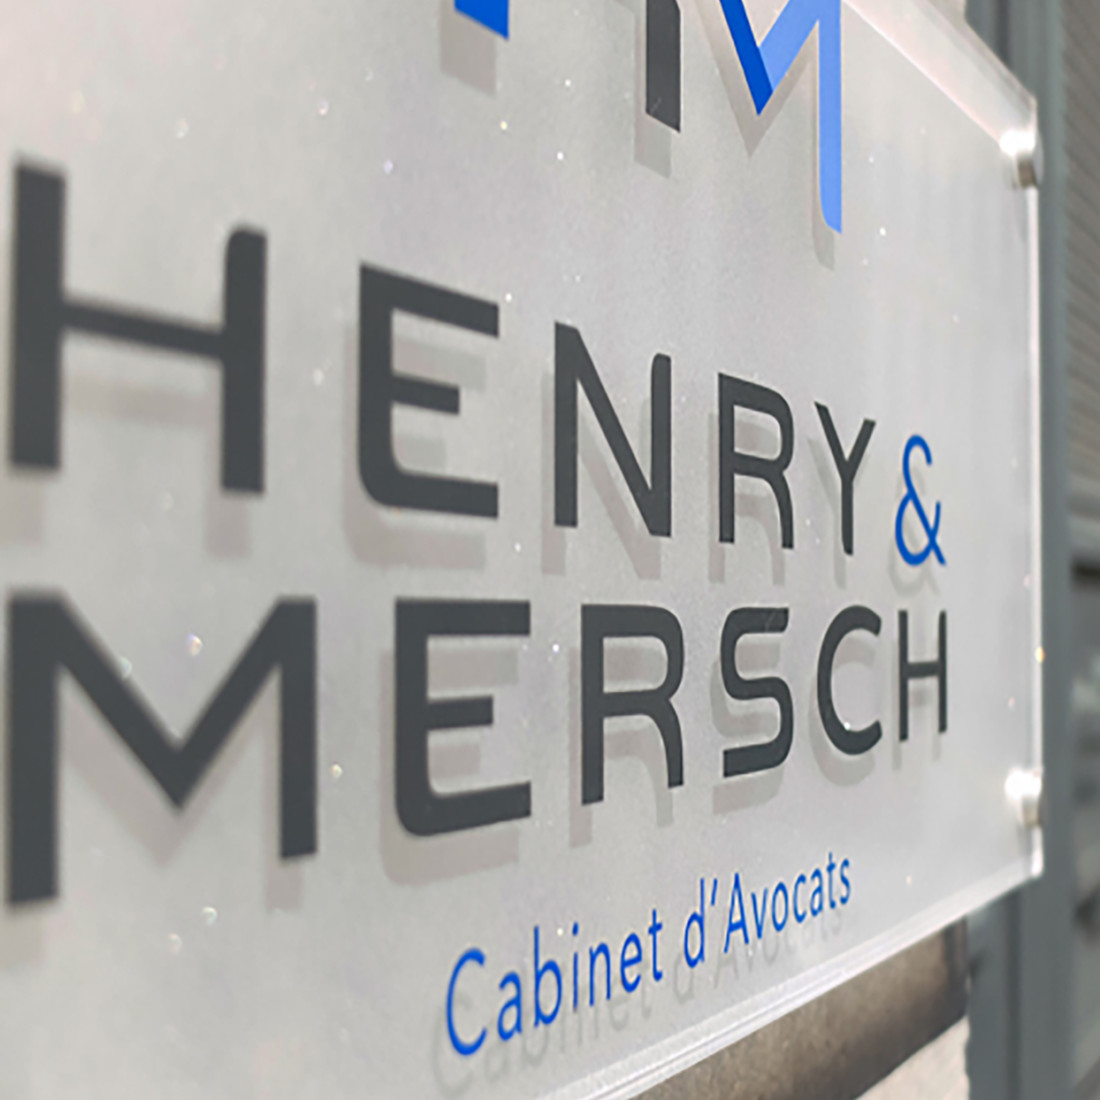 Henry & Mersch